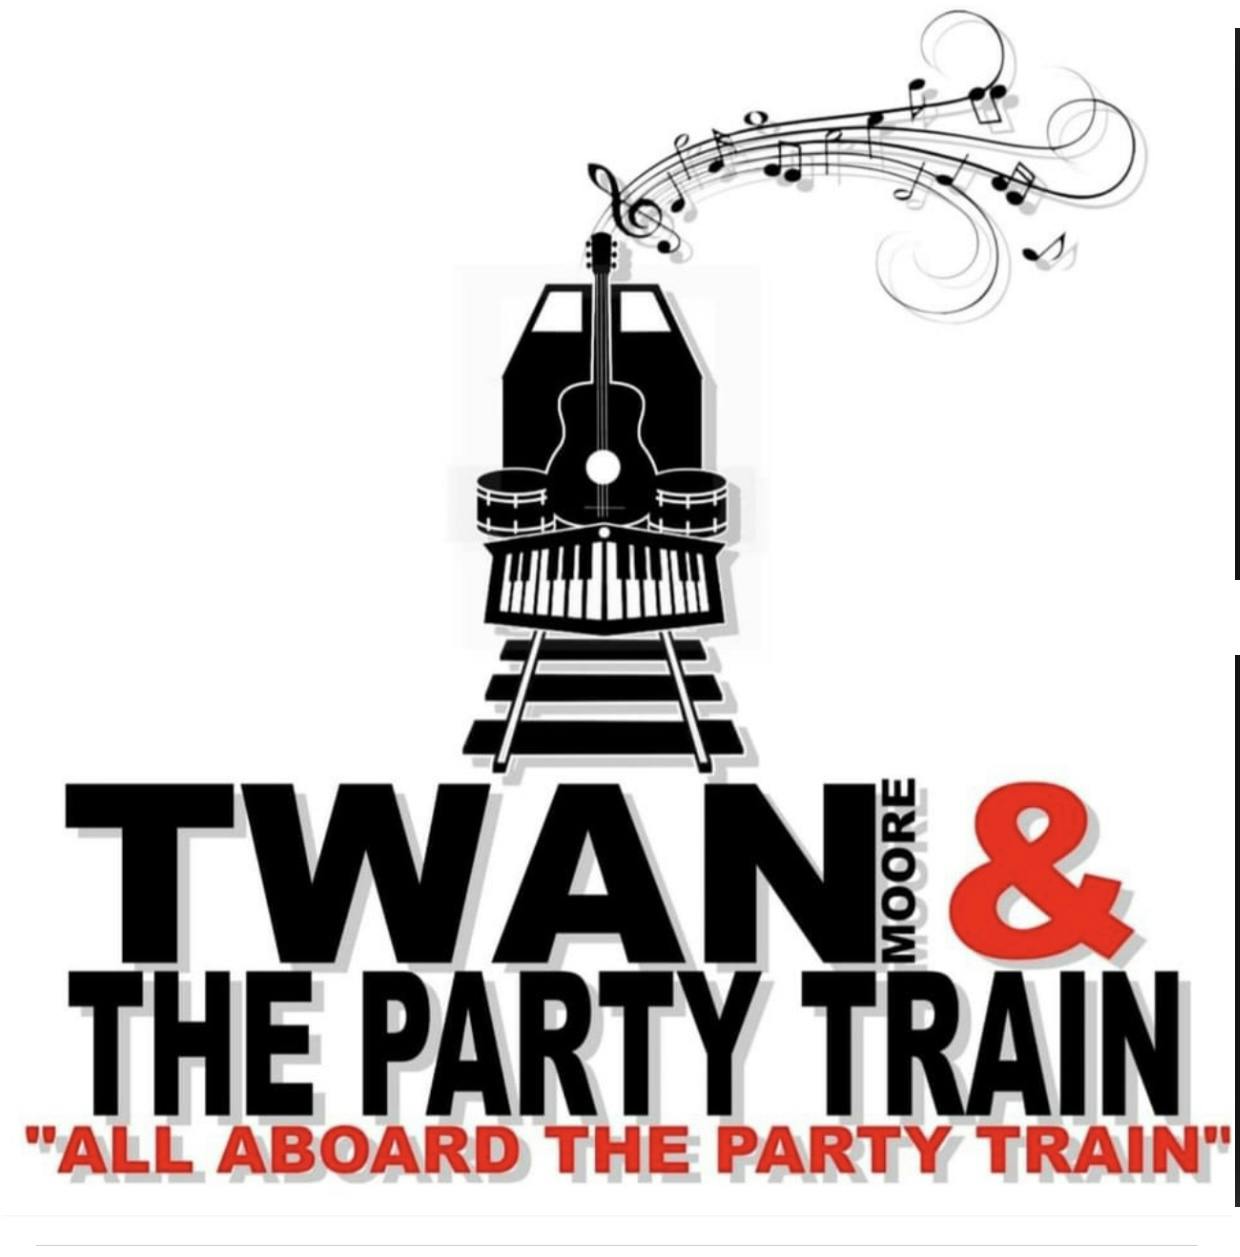 TWAN MOORE & PARTY TRAIN